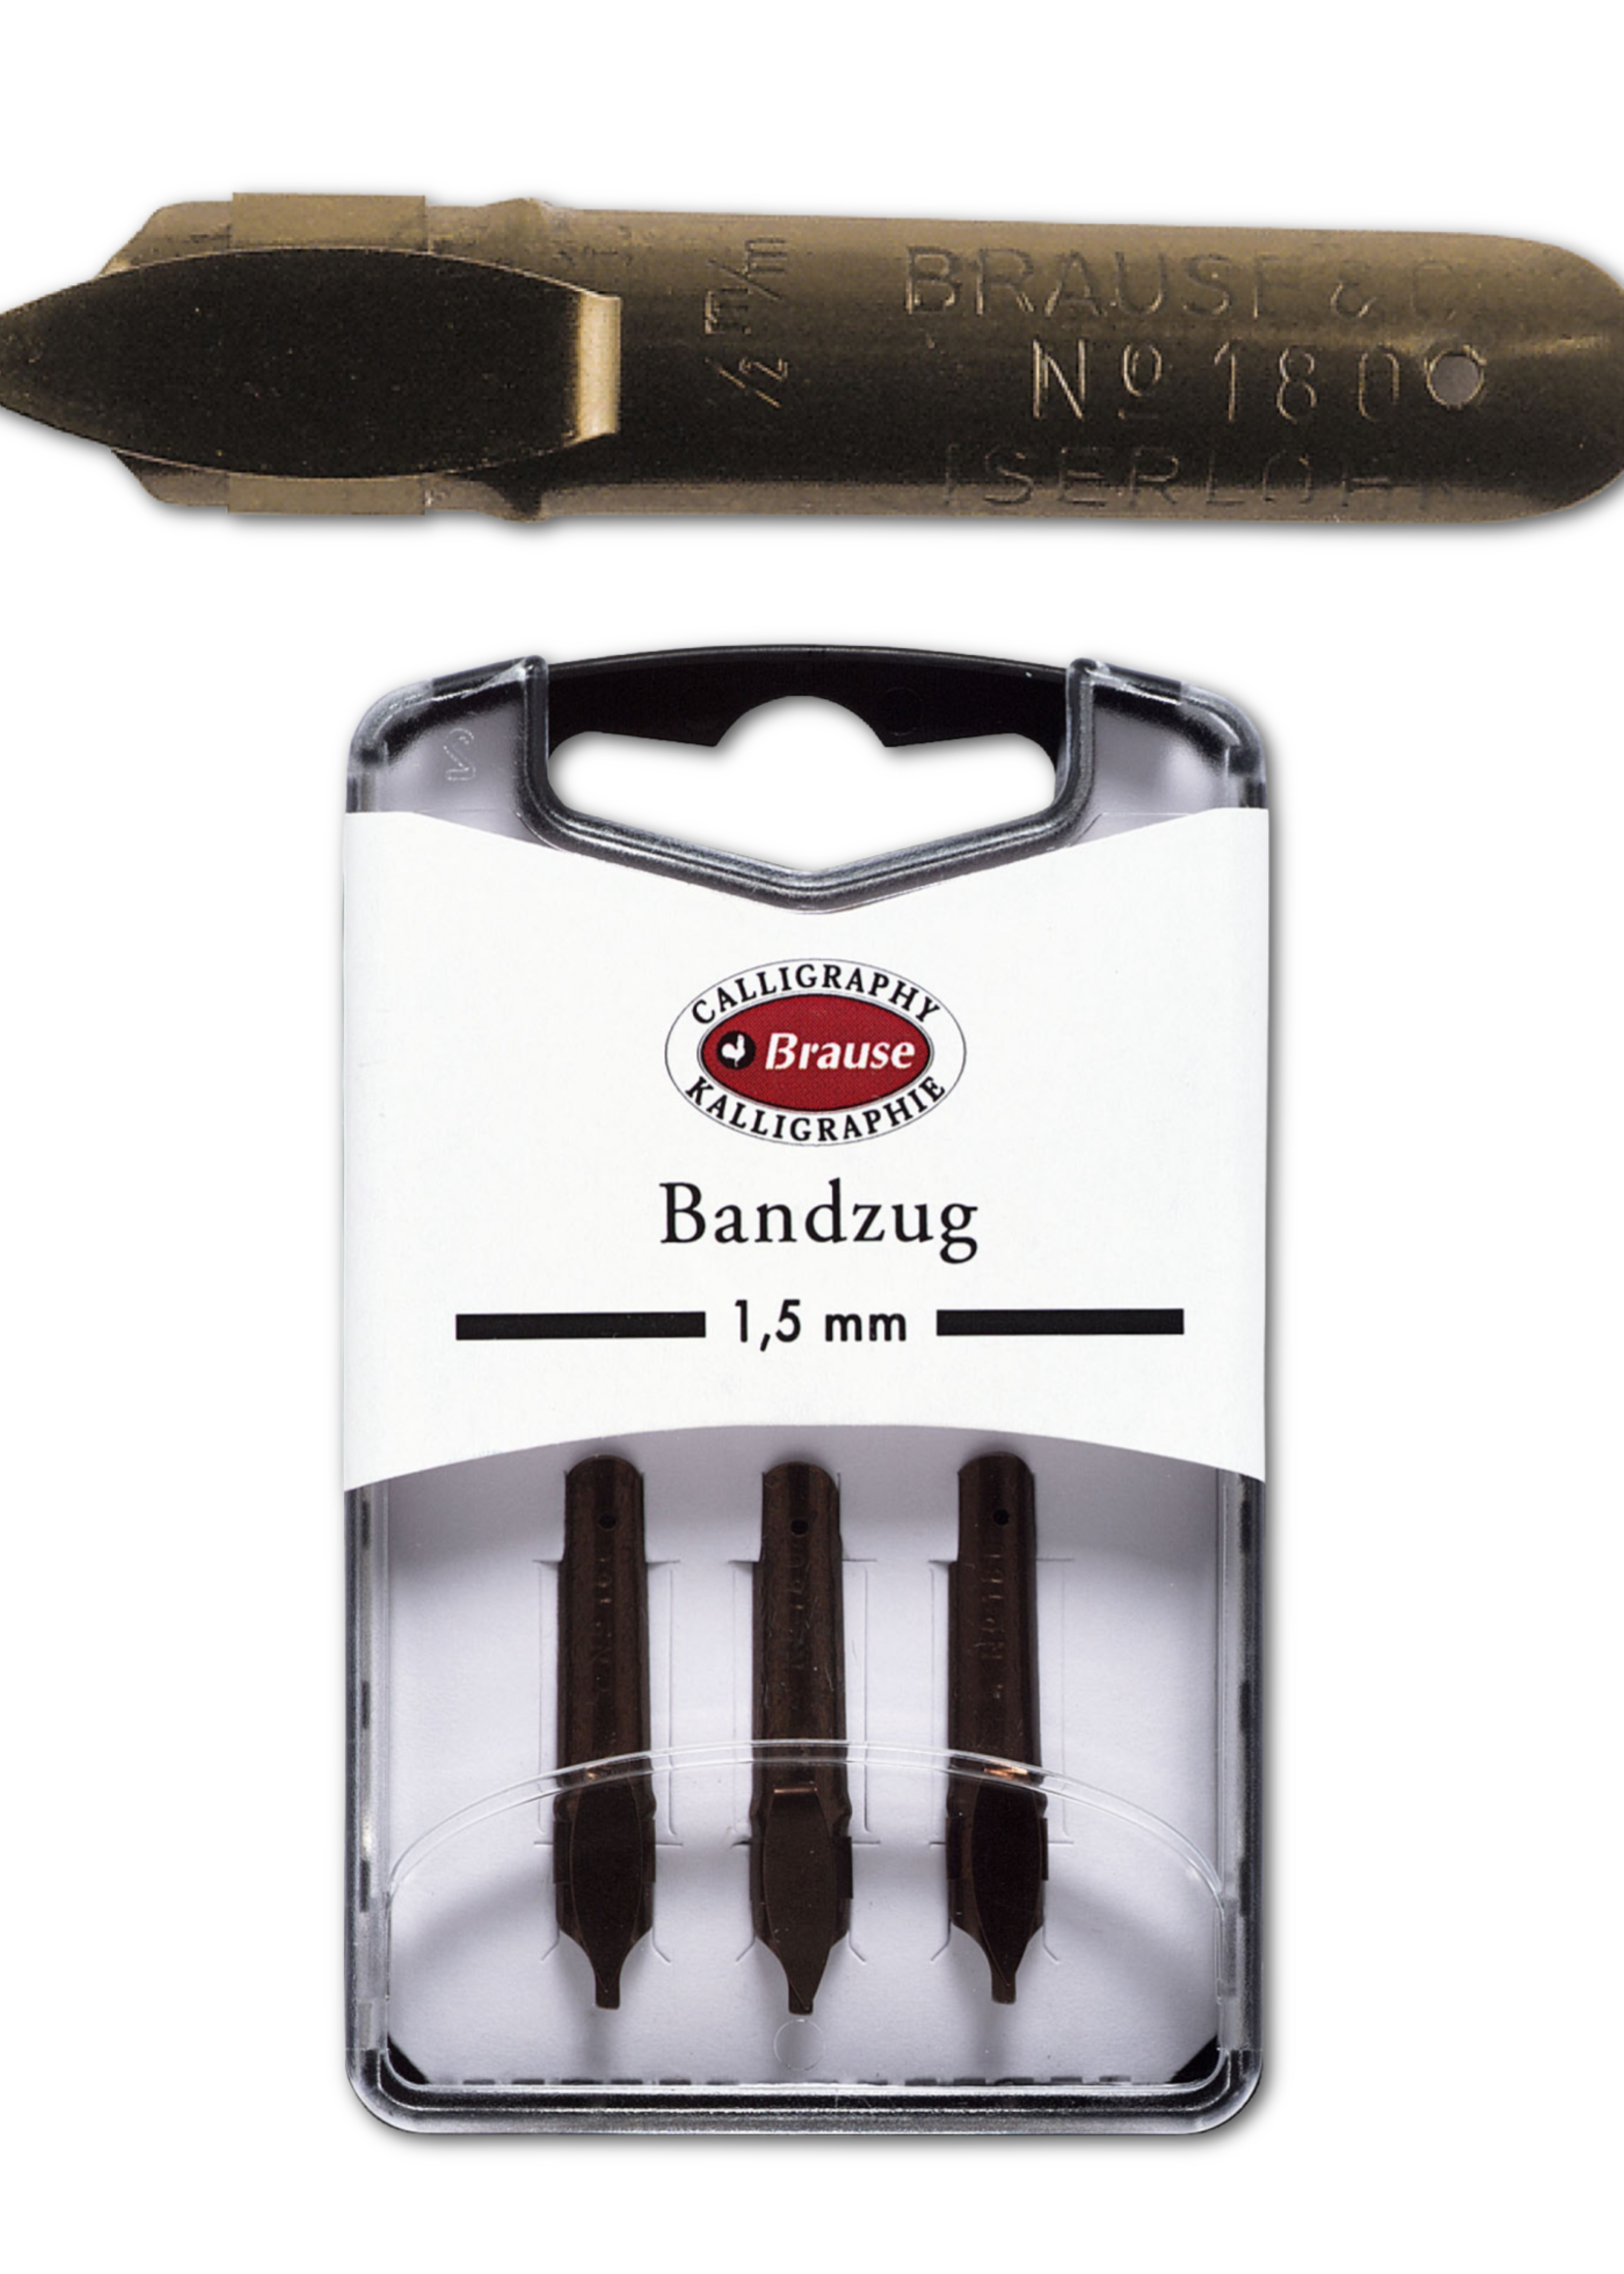 Exaclair Brause Calligraphy Nib - Bandzug 1.5mm